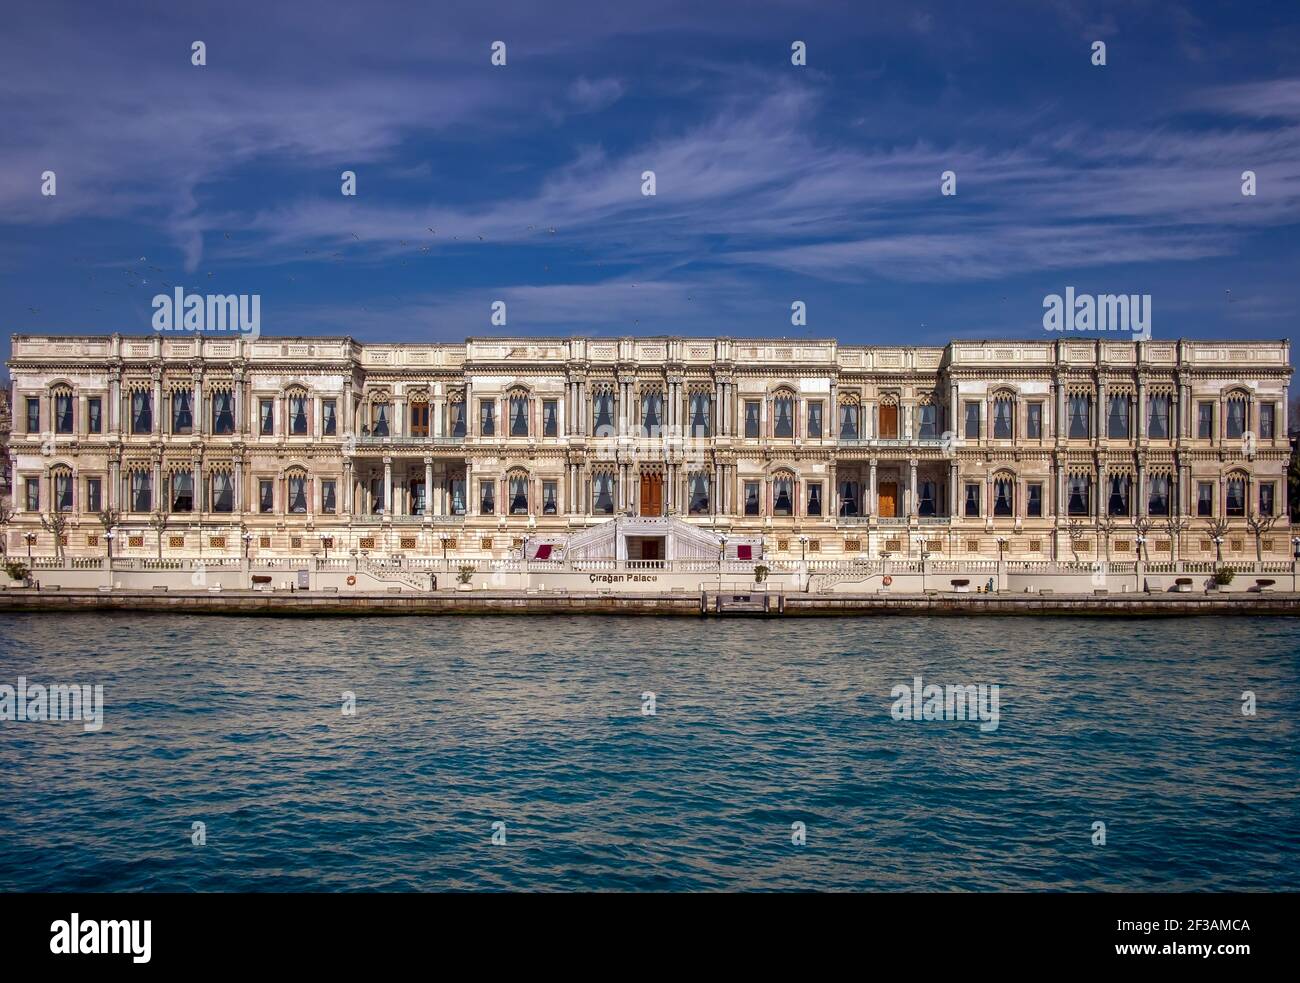 Ciragan Palace (Ciragan Sarayi) un ex palazzo ottomano, ora un hotel nella catena Kempinski Hotels. Distretto di Besiktas Foto Stock